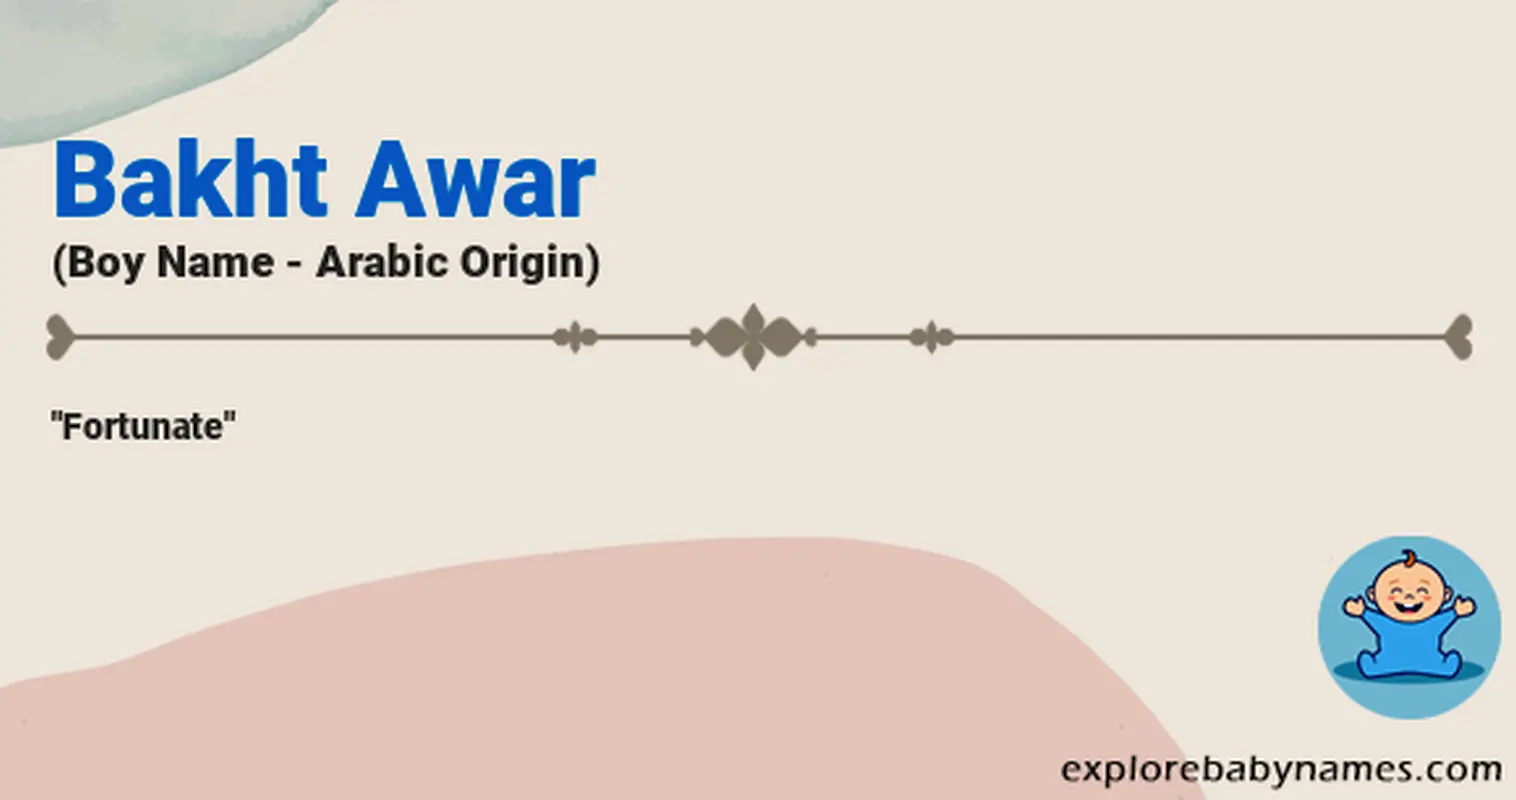 Meaning of Bakht Awar